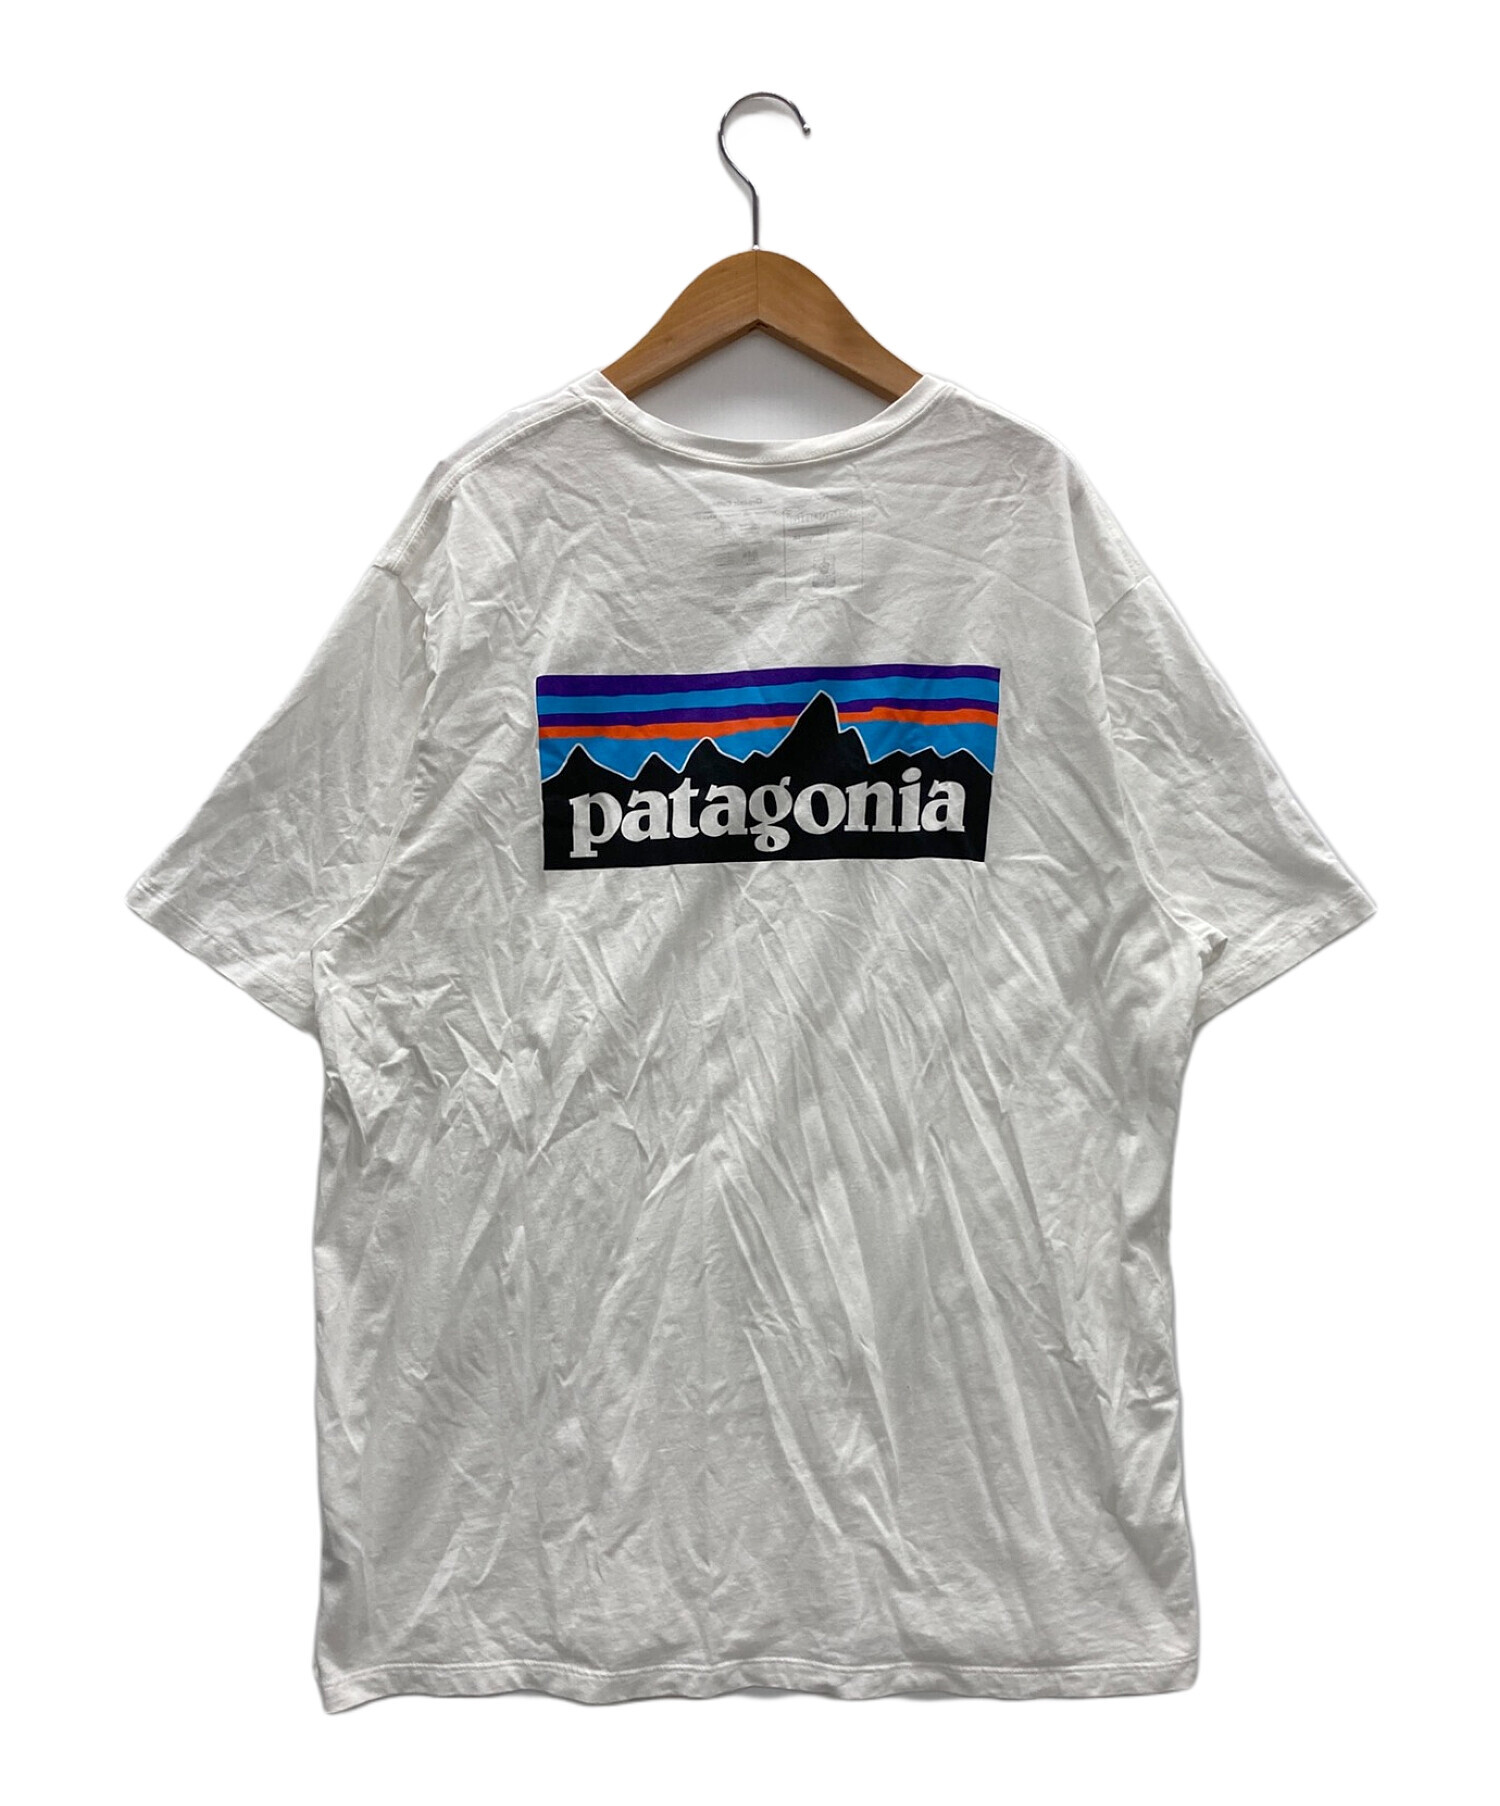 Patagonia (パタゴニア) Tシャツ ホワイト サイズ:L